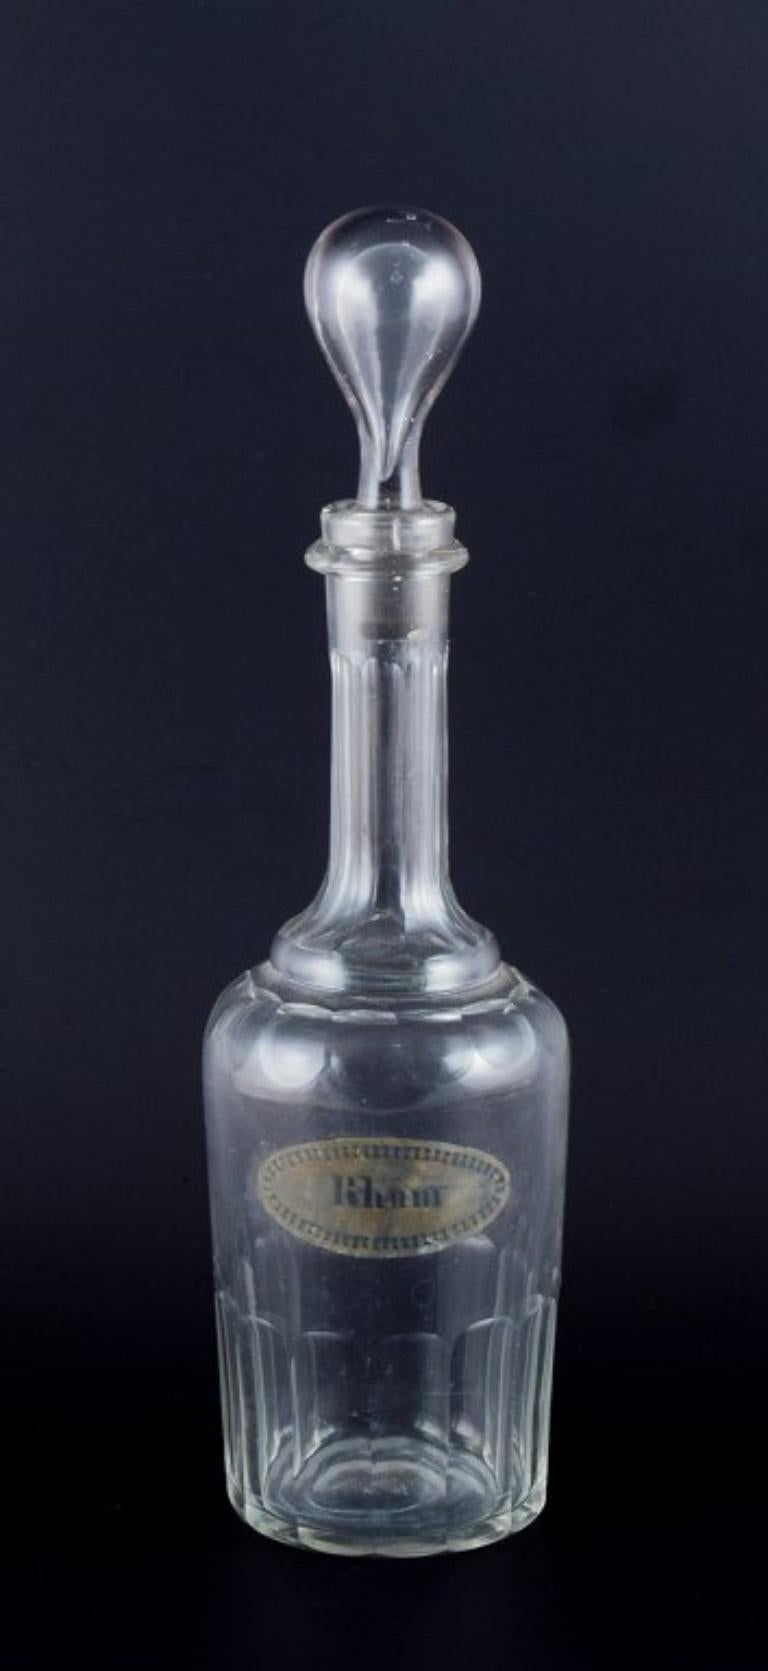 Dänische Glashütte, Karaffe für Rum aus klarem mundgeblasenem facettiertem Glas.
1930er/1940er Jahre.
In ausgezeichnetem Zustand.
Mit einem eingravierten Label, auf dem 